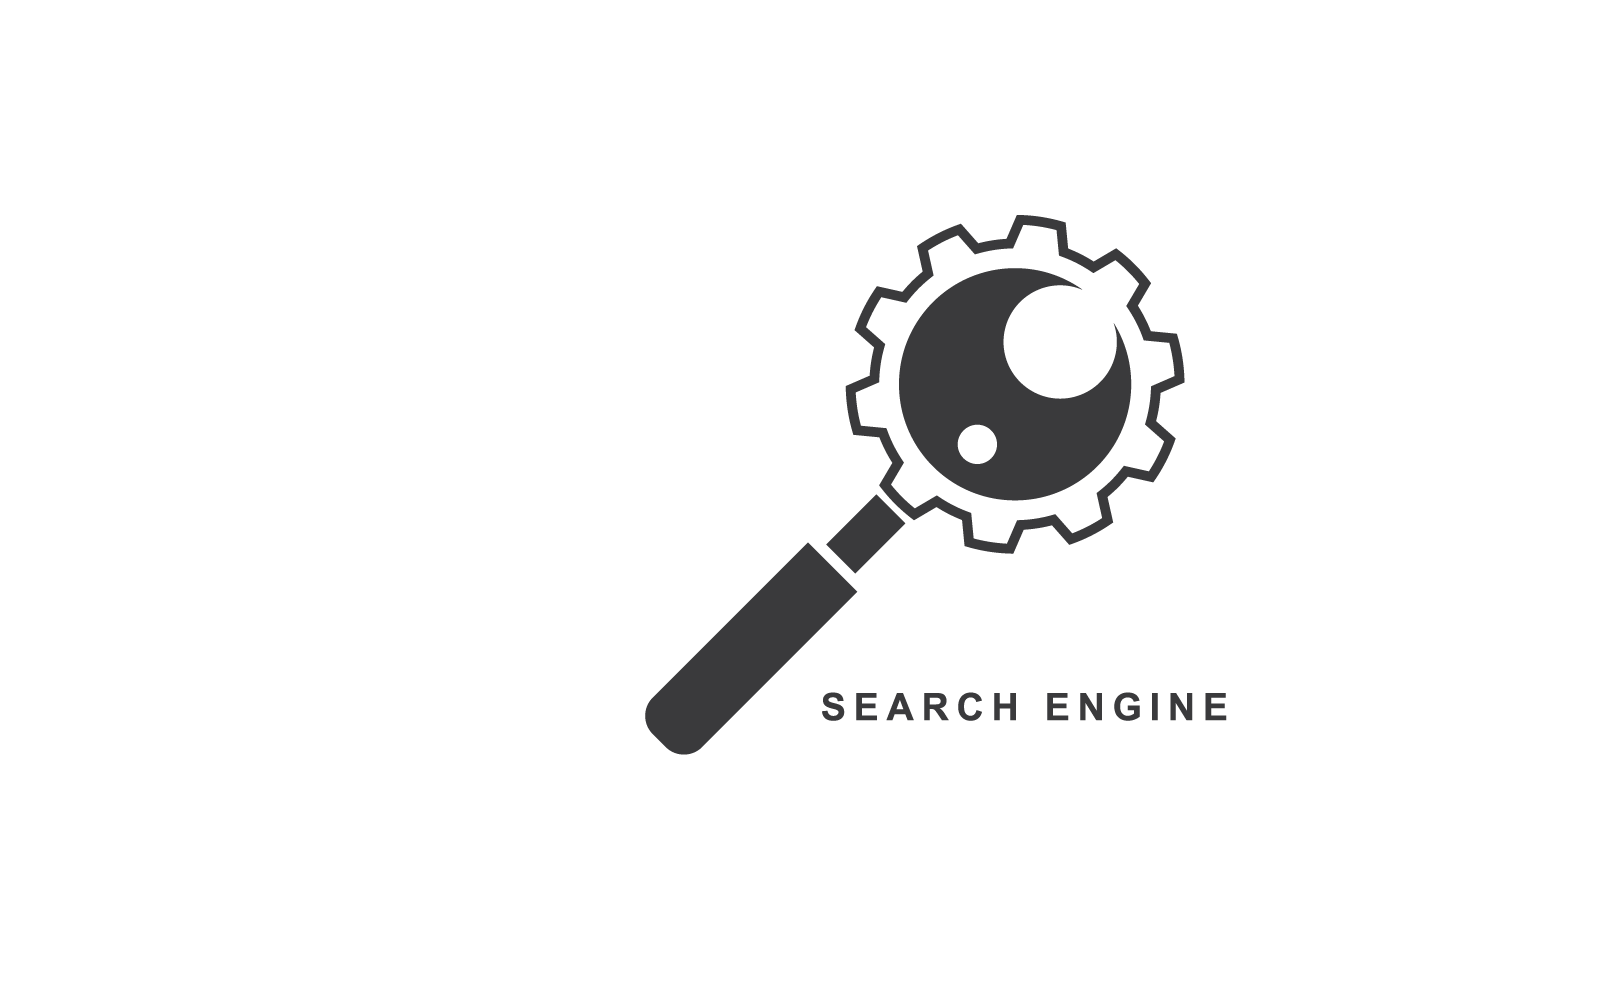 Diseño plano del vector del logotipo del motor de búsqueda